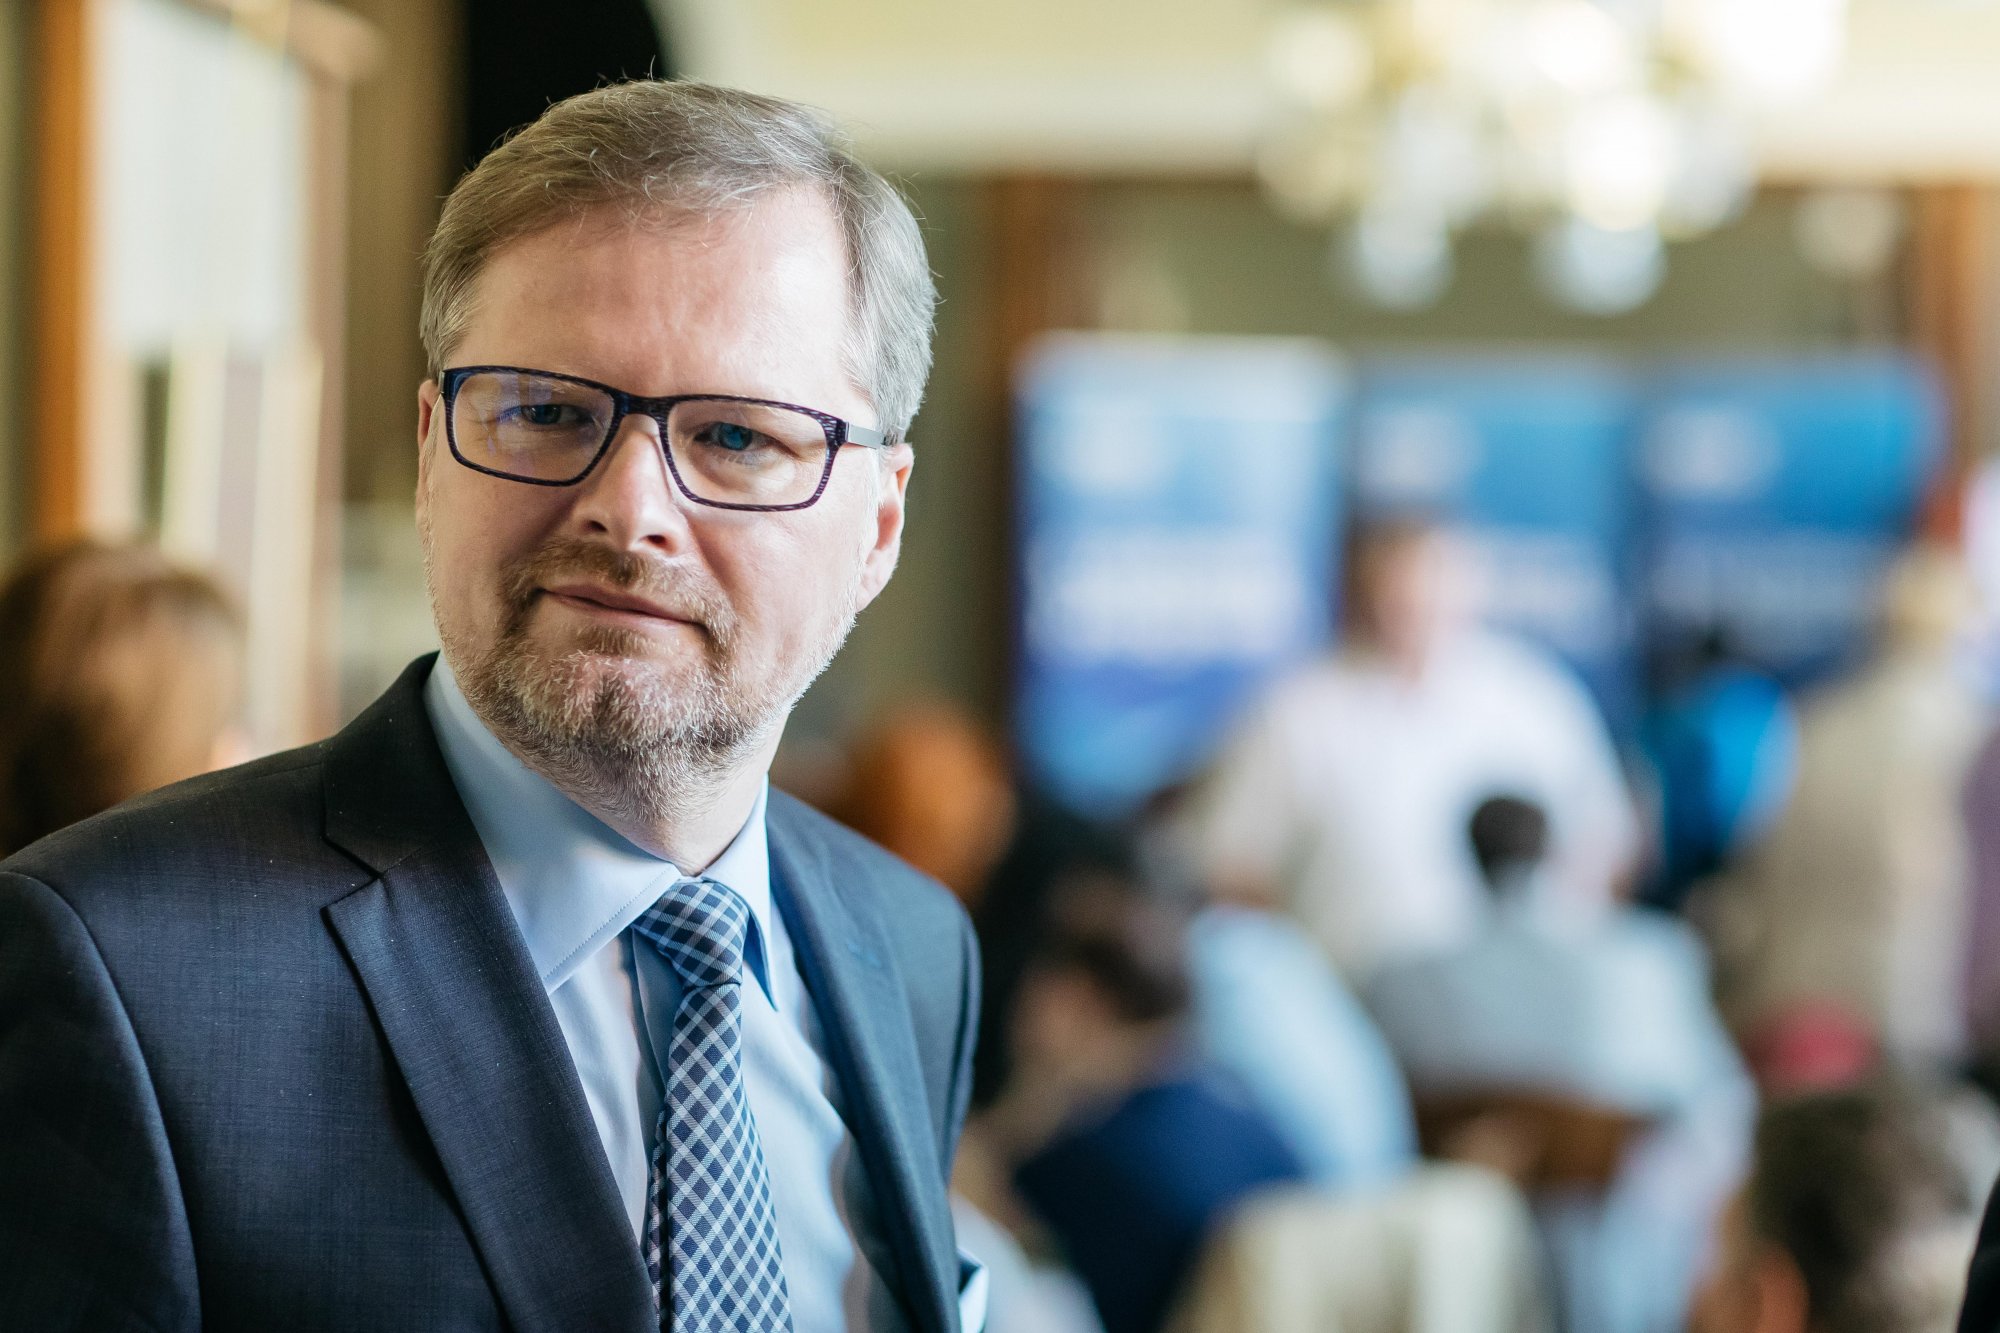 Za neexistenci vlády s důvěrou nemůže výsledek voleb, ale Andrej Babiš